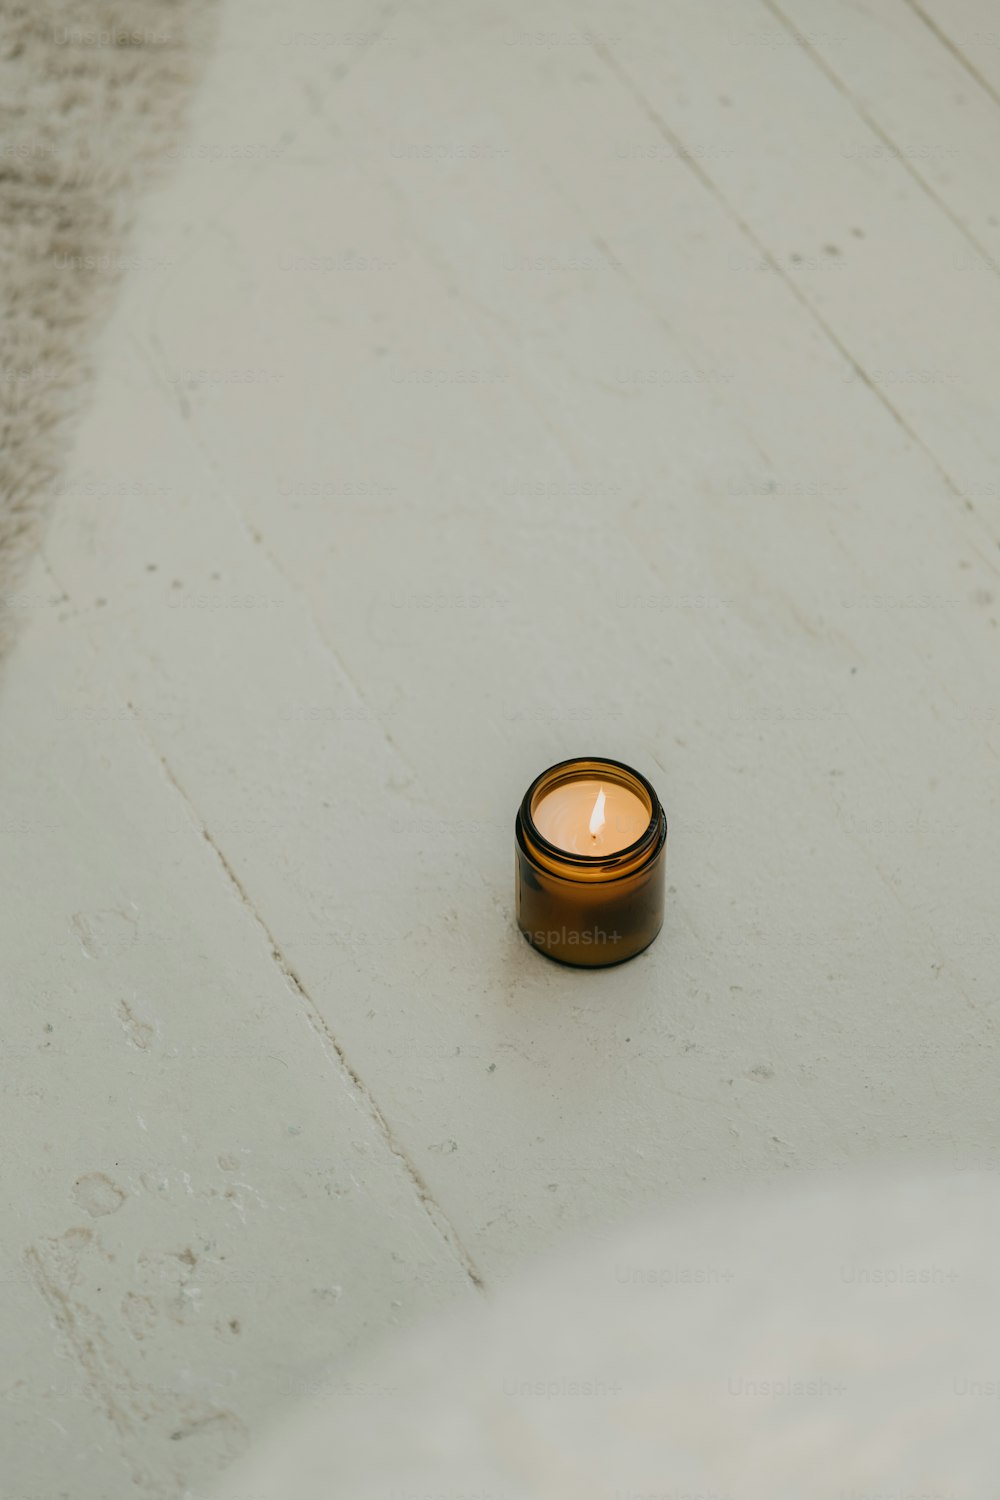 eine kleine Kerze, die auf einer weißen Fläche sitzt